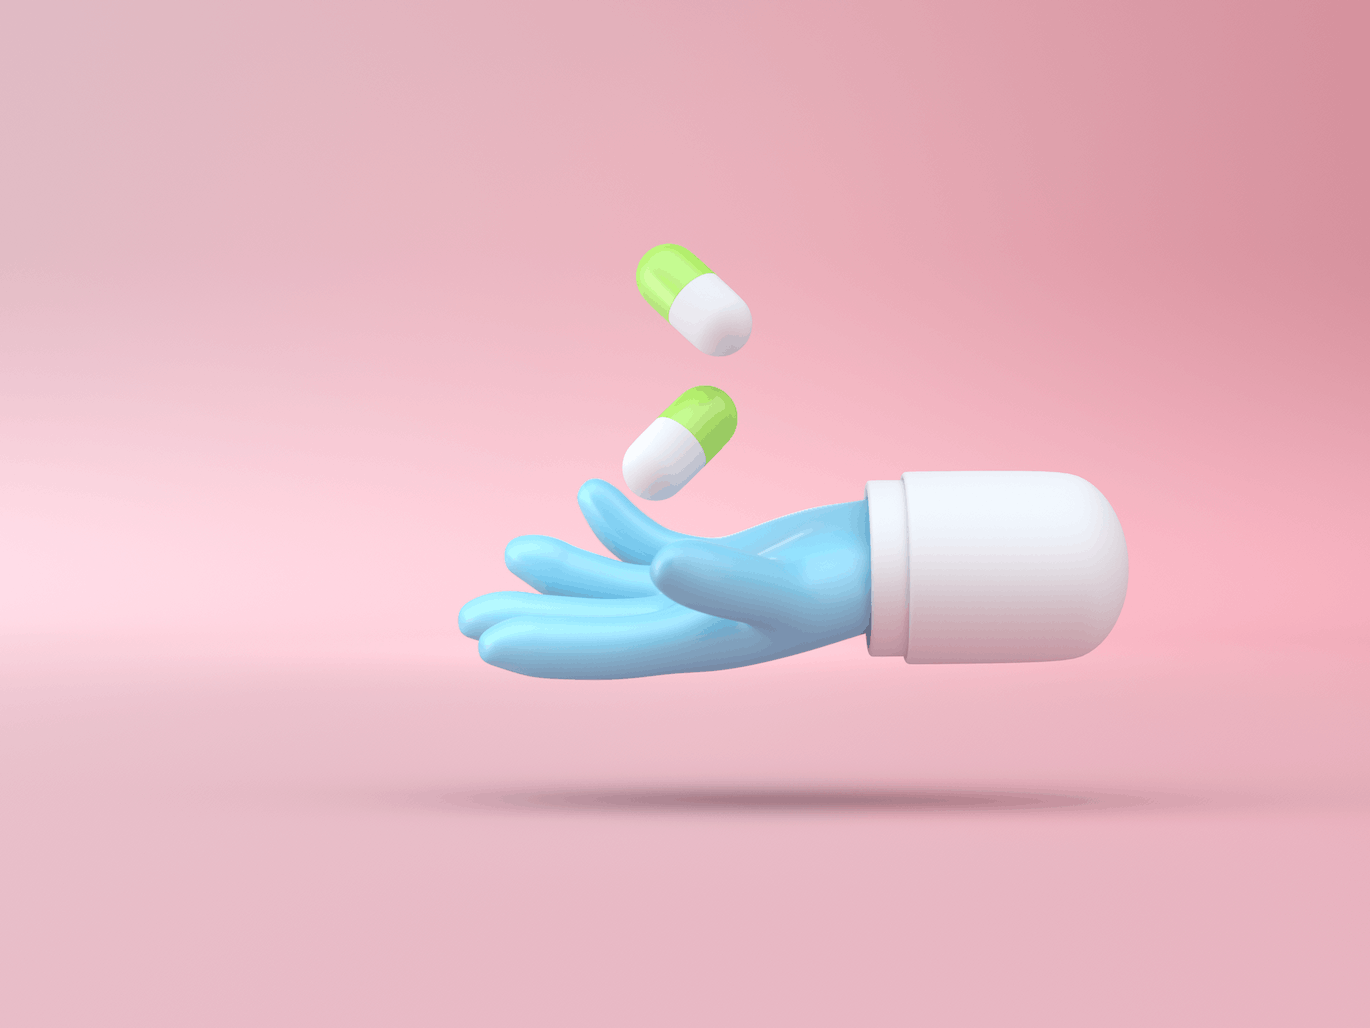 医疗手3D对象插画psd素材 Set Health Objects 设计素材 第2张